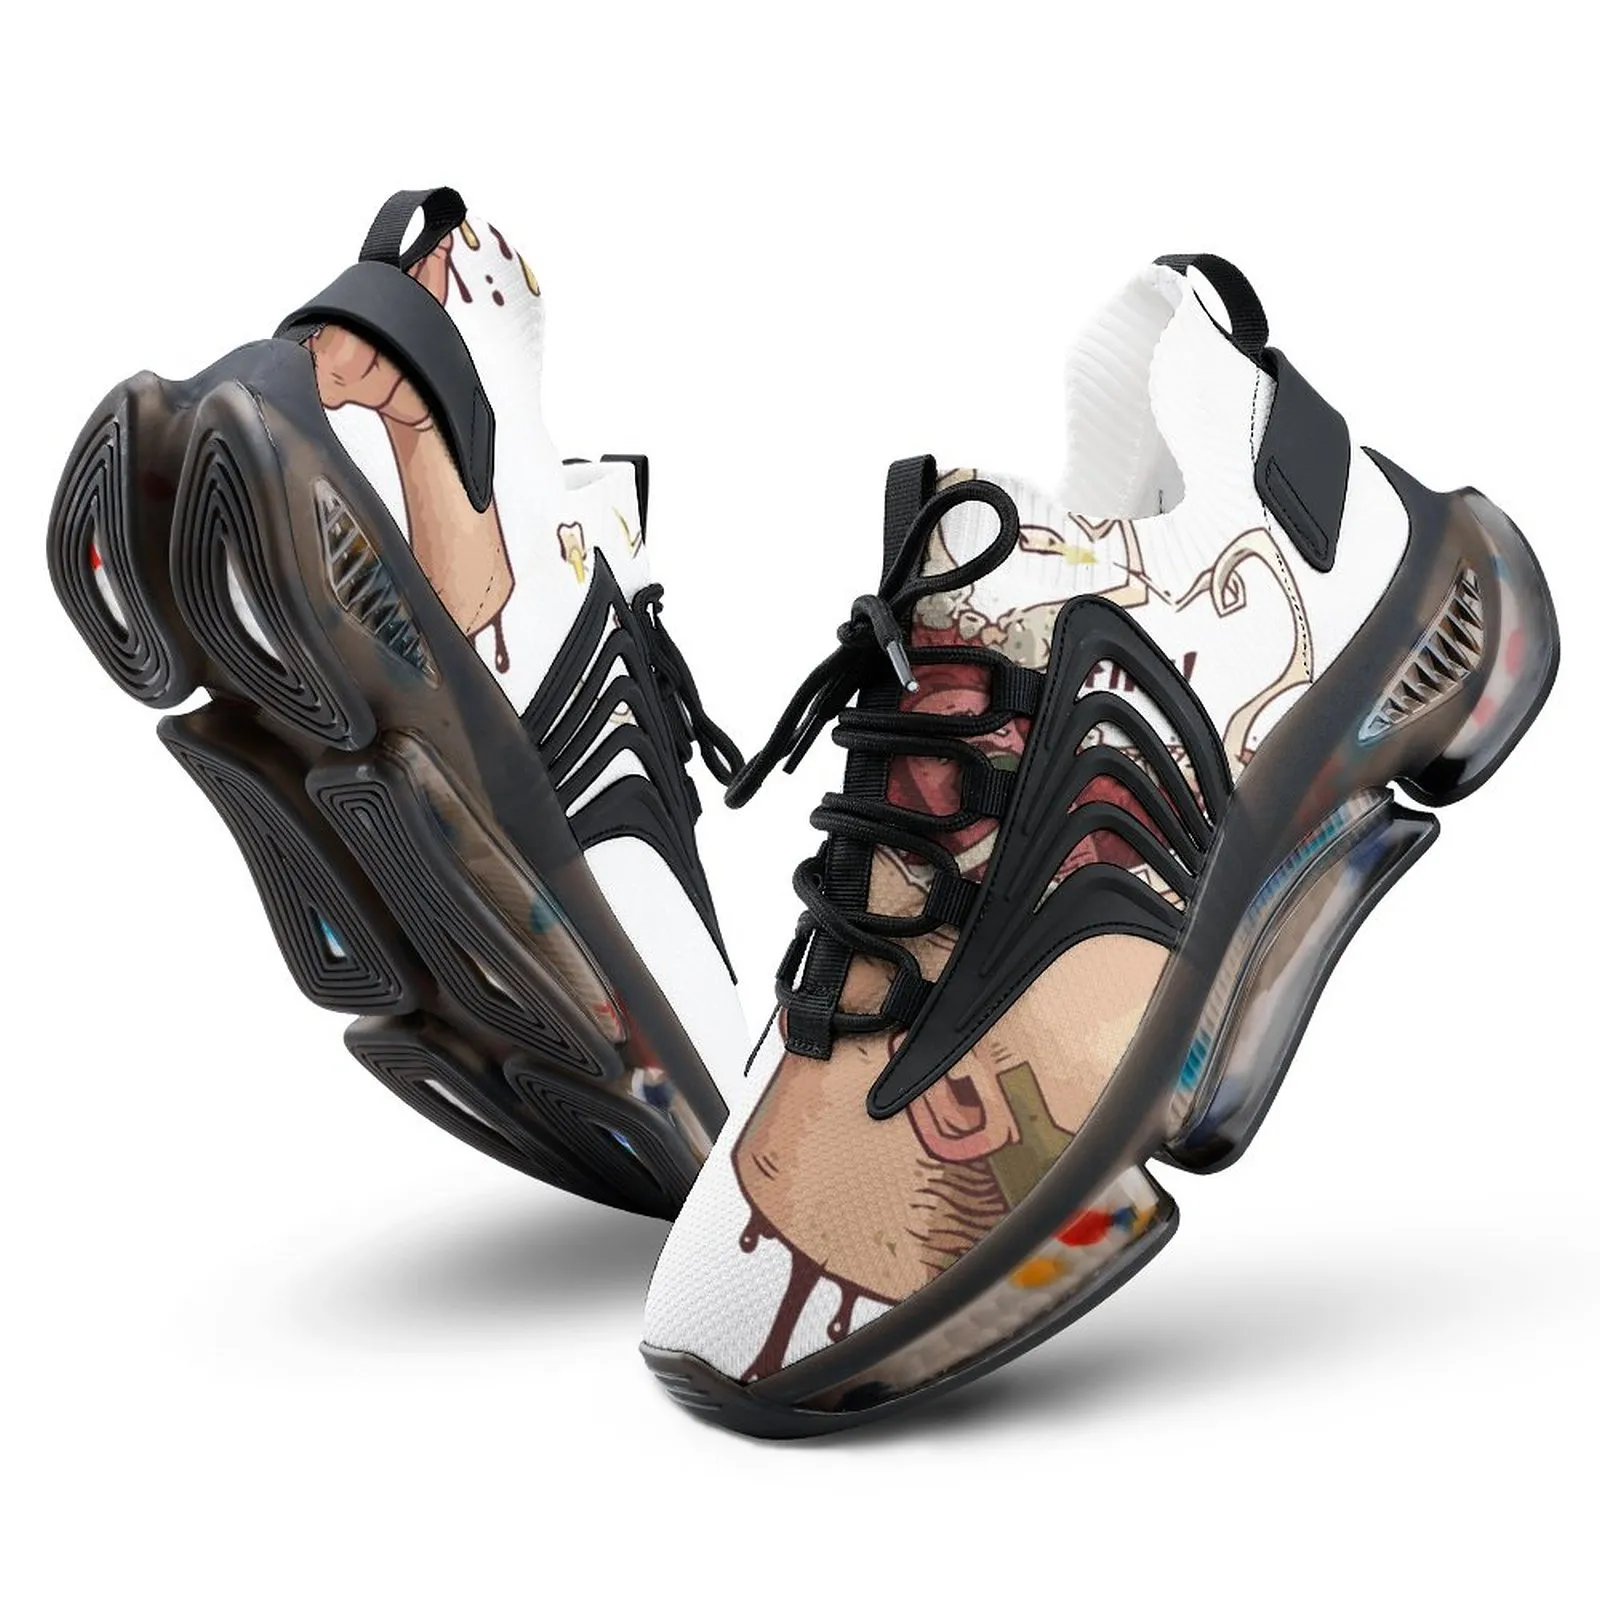 الأحذية الرياضية المخصصة المخصصة مرنة مريحة للركض ذبابة نسج الضوء التنفس B23 المدربين أحذية أحذية رياضية 38-46